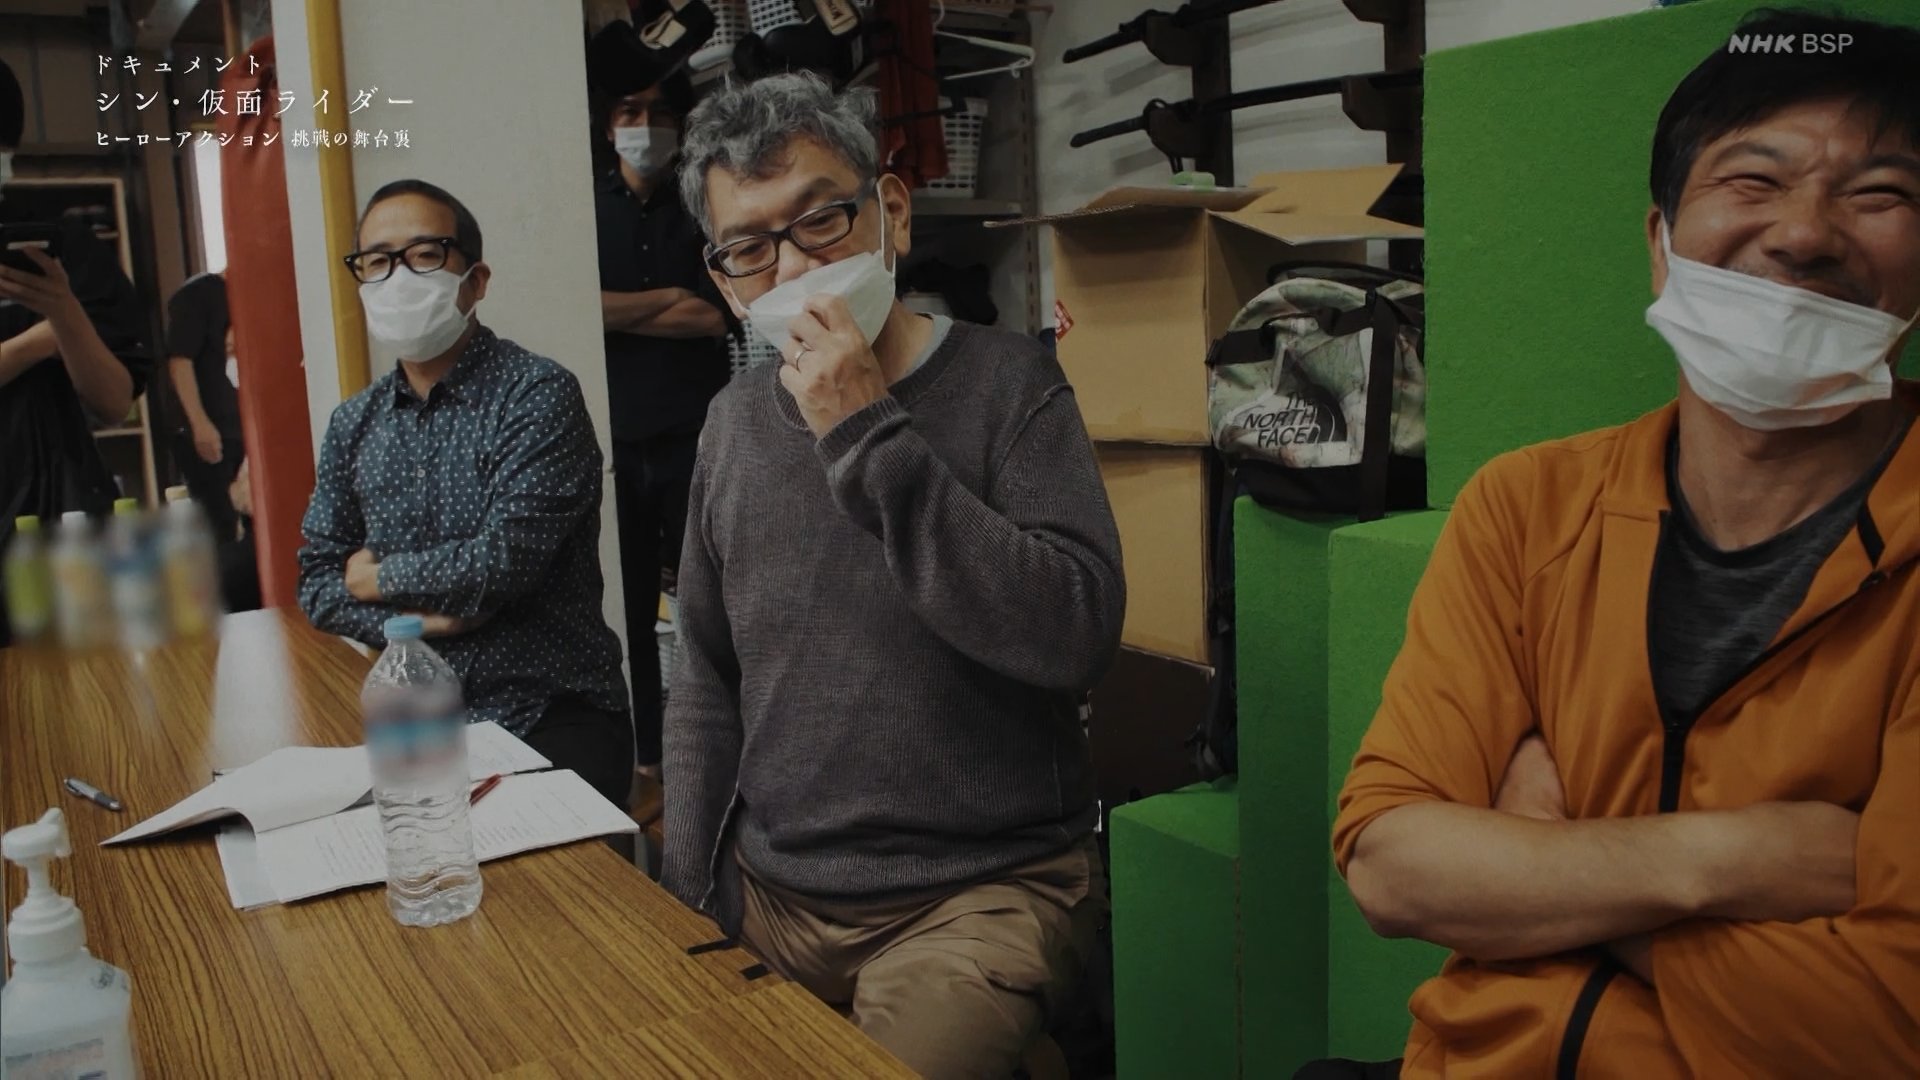 El cineasta Hideaki Anno, tomará un descanso después de 30 años 2